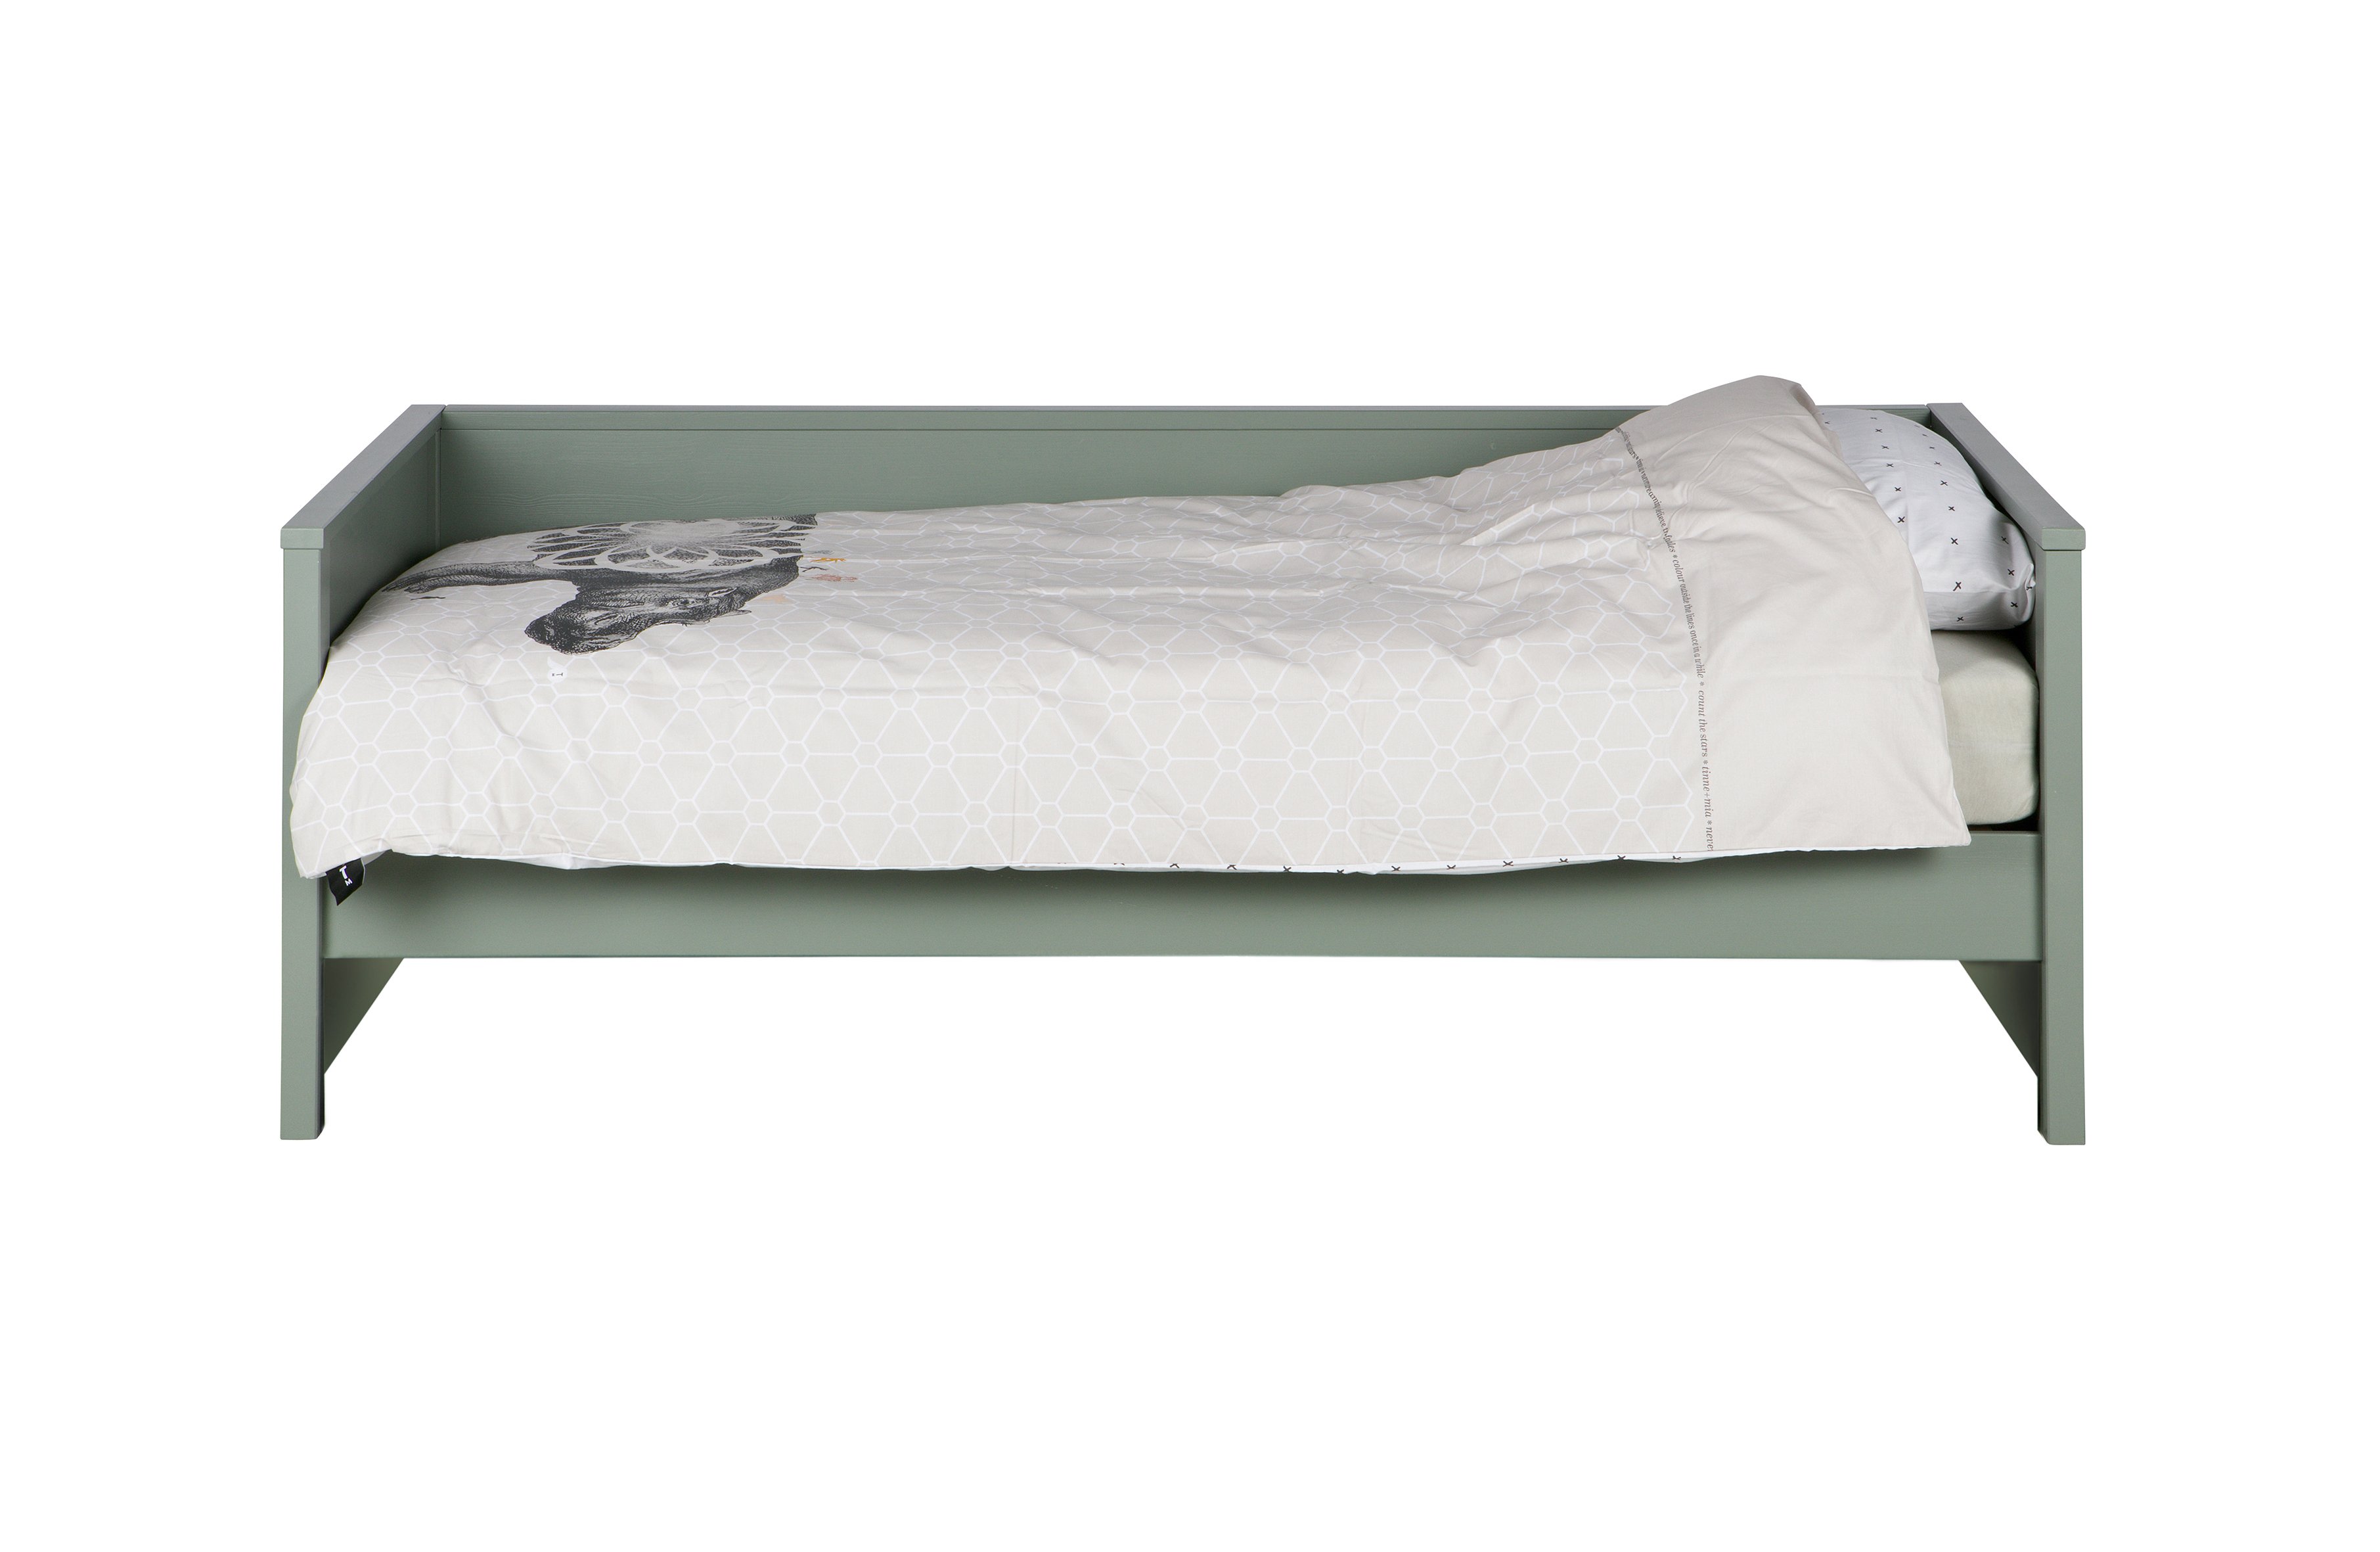 Canapé lit 90x200cm pour chambre enfant bois massif marque Woood